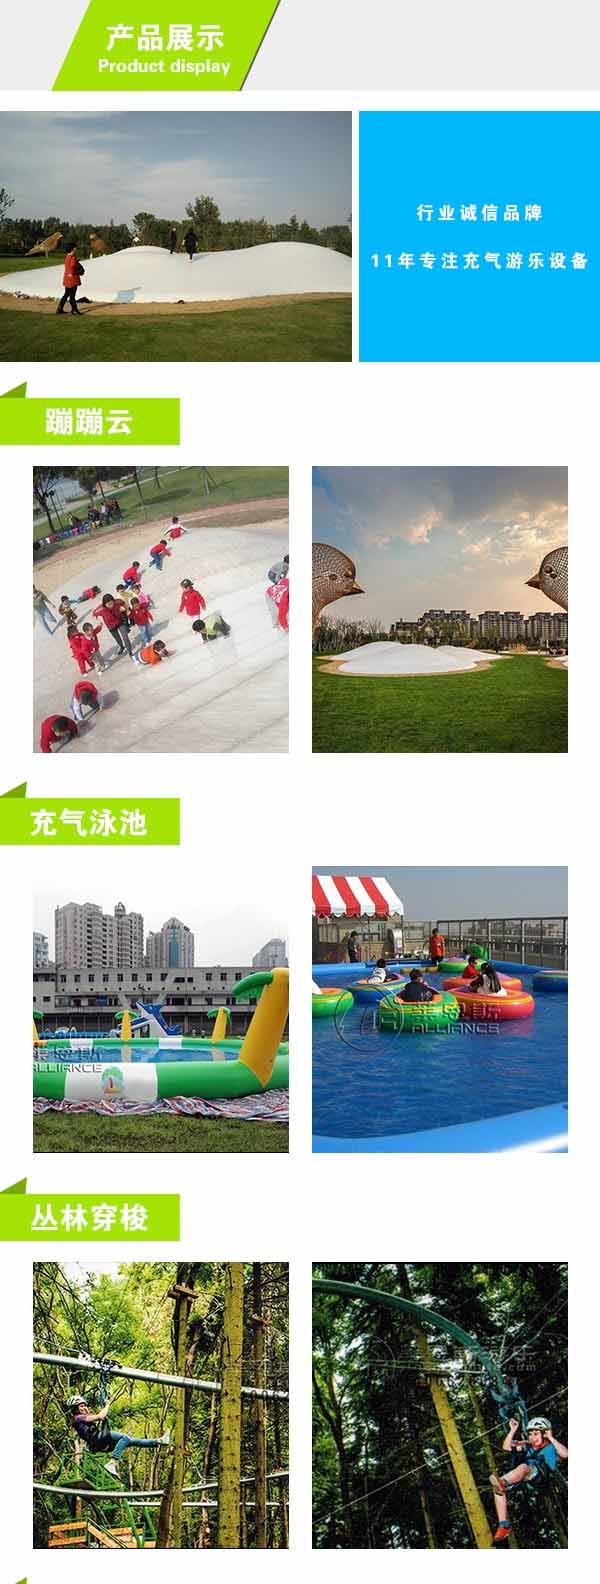 郑州水上乐园设施建造公司  莱恩斯游乐  郑州水上乐园设施 3